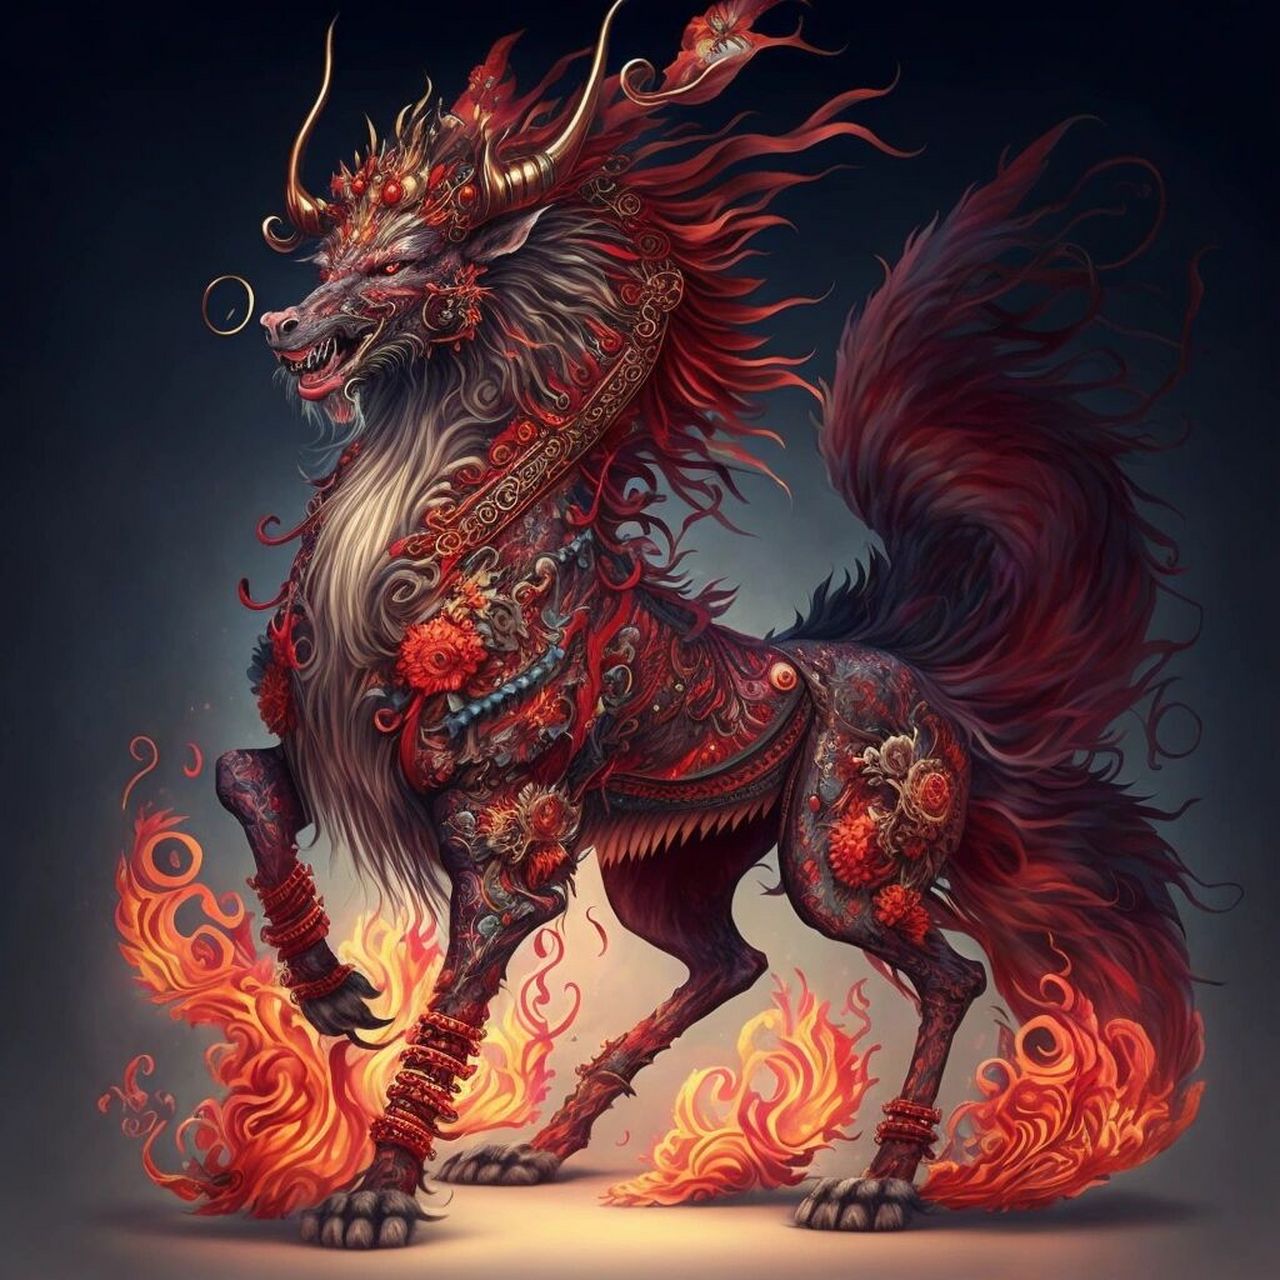 中国火神兽图片